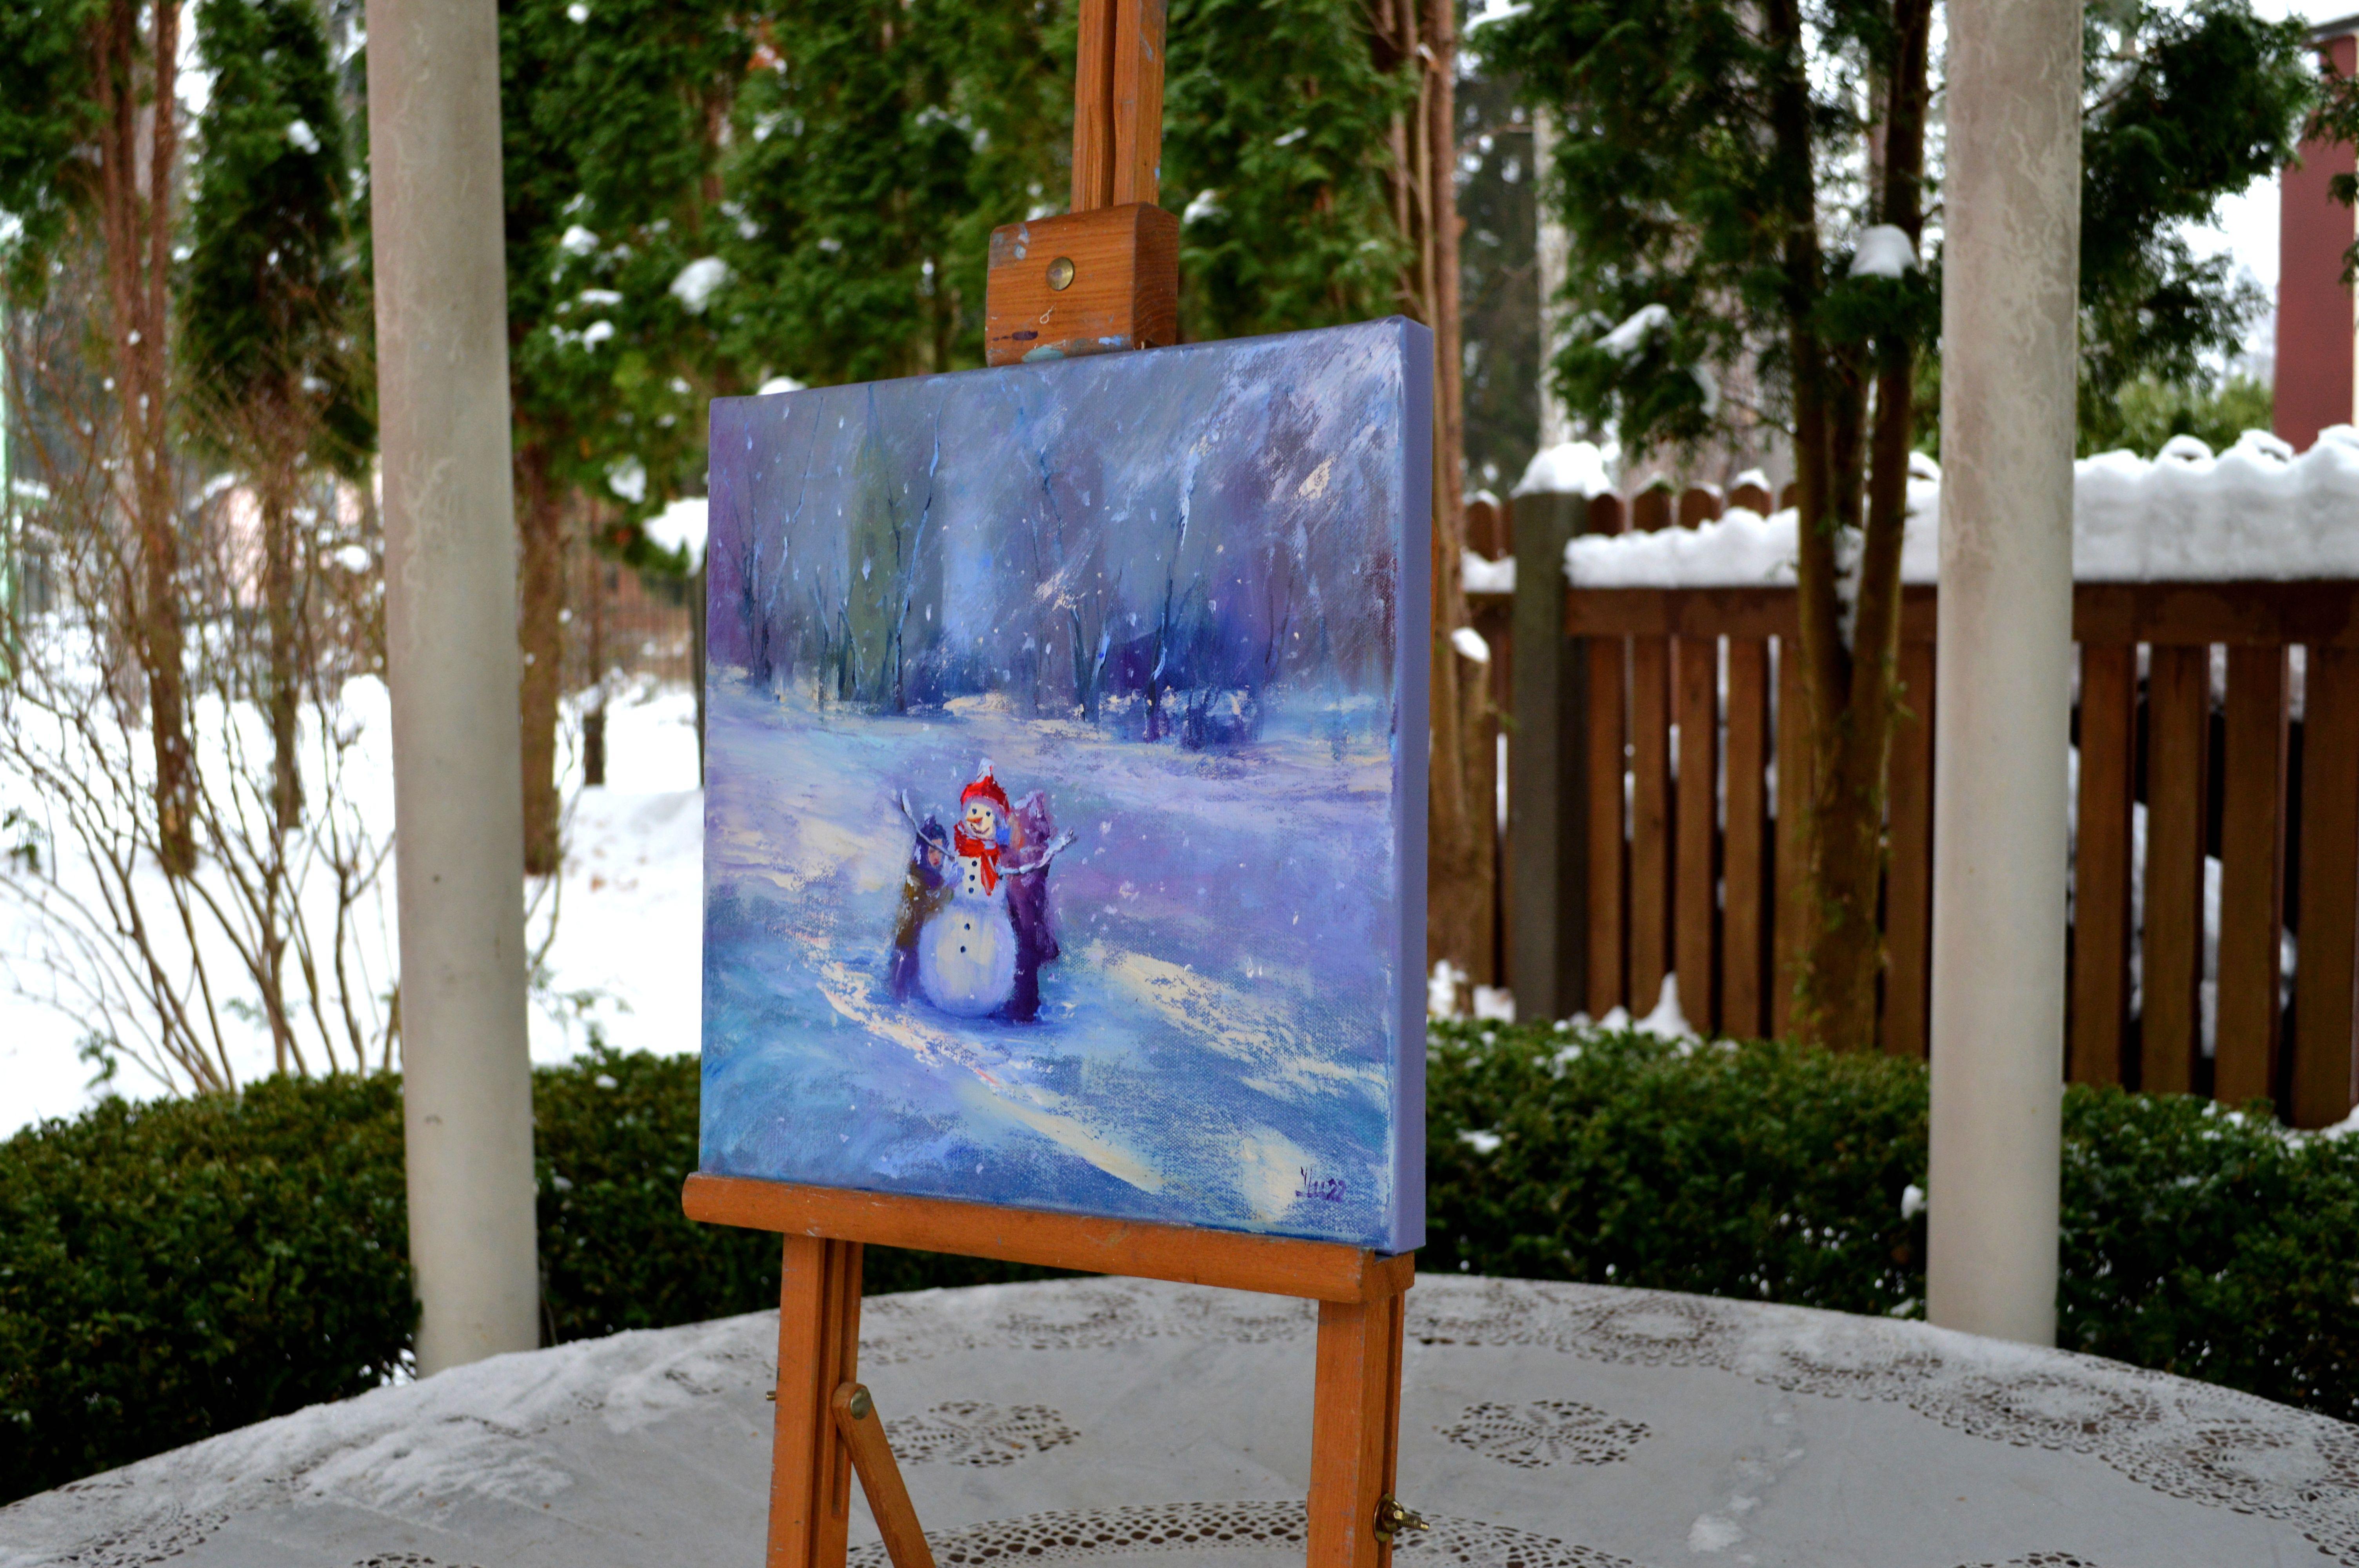 Dans cette peinture à l'huile, j'ai capturé un moment hivernal fantaisiste rempli de joie et de sérénité. Le bonhomme de neige, doté d'un sourire joyeux, symbolise les plaisirs simples et l'esprit ludique de la saison. Les coups de pinceau